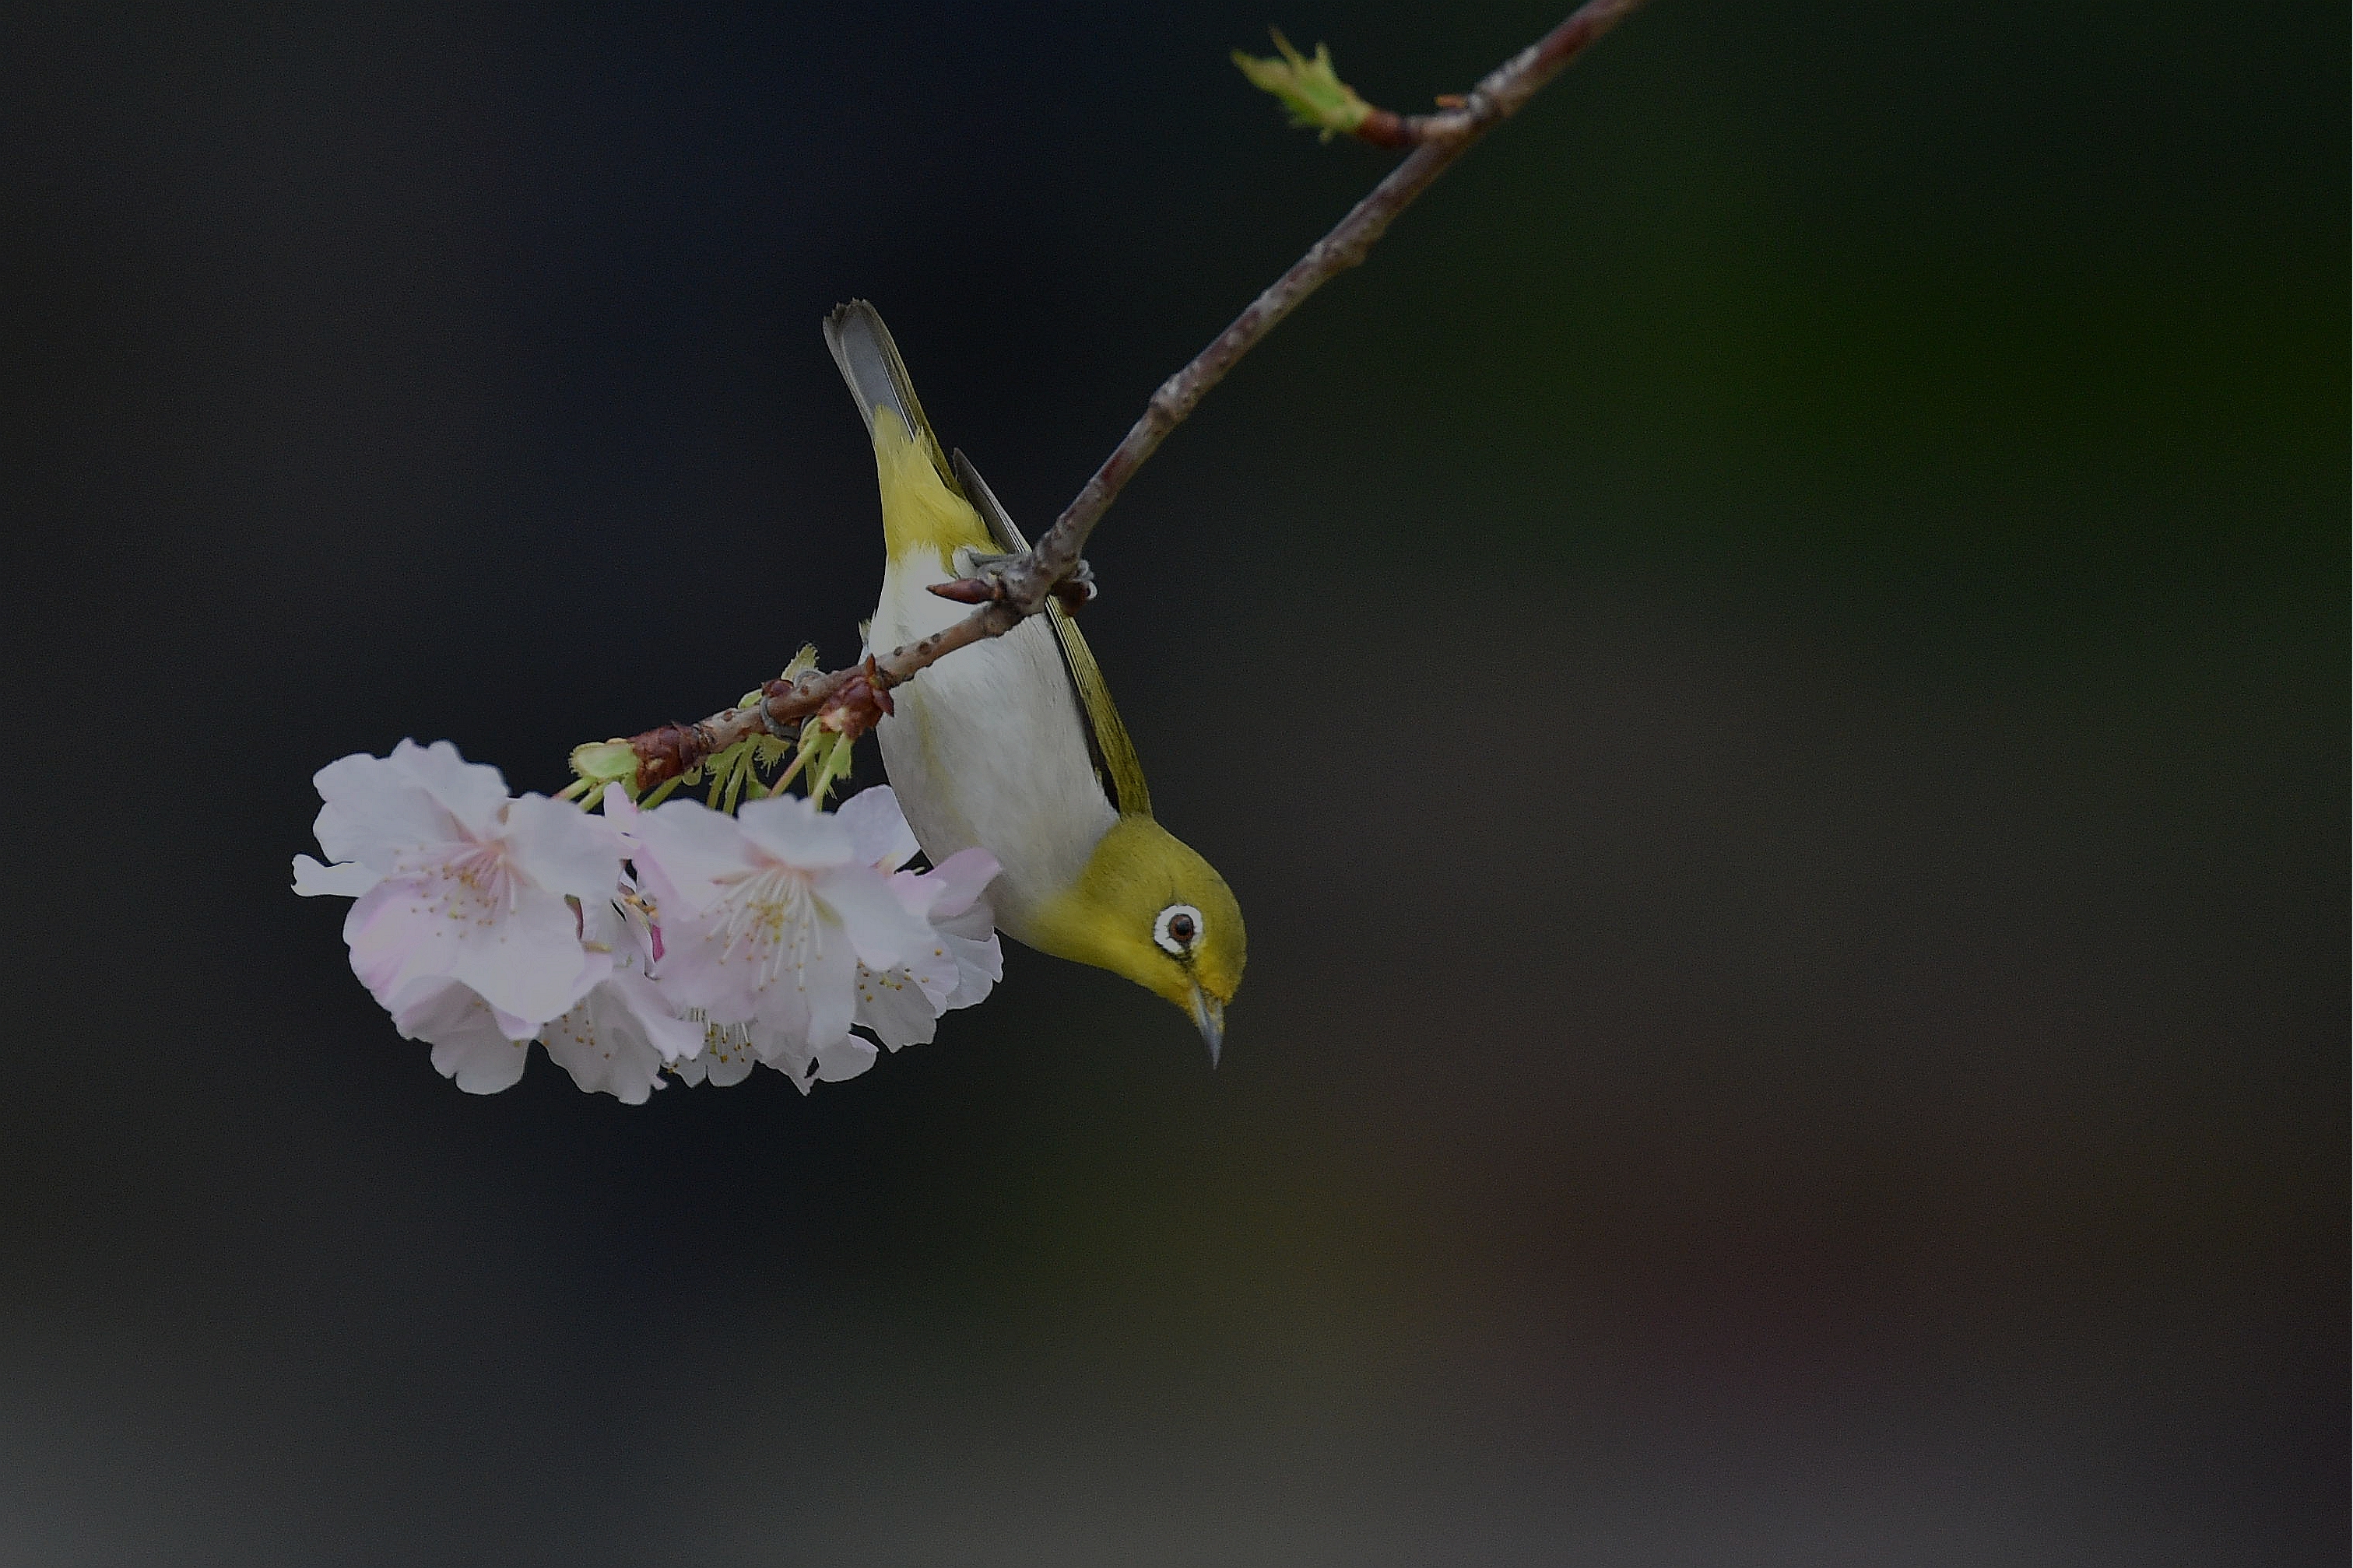 356472 免費下載壁紙 动物, 暗绿绣眼鸟, 鸟, 日本, 雀形目, 樱花盛开, 春季, 鸟类 屏保和圖片